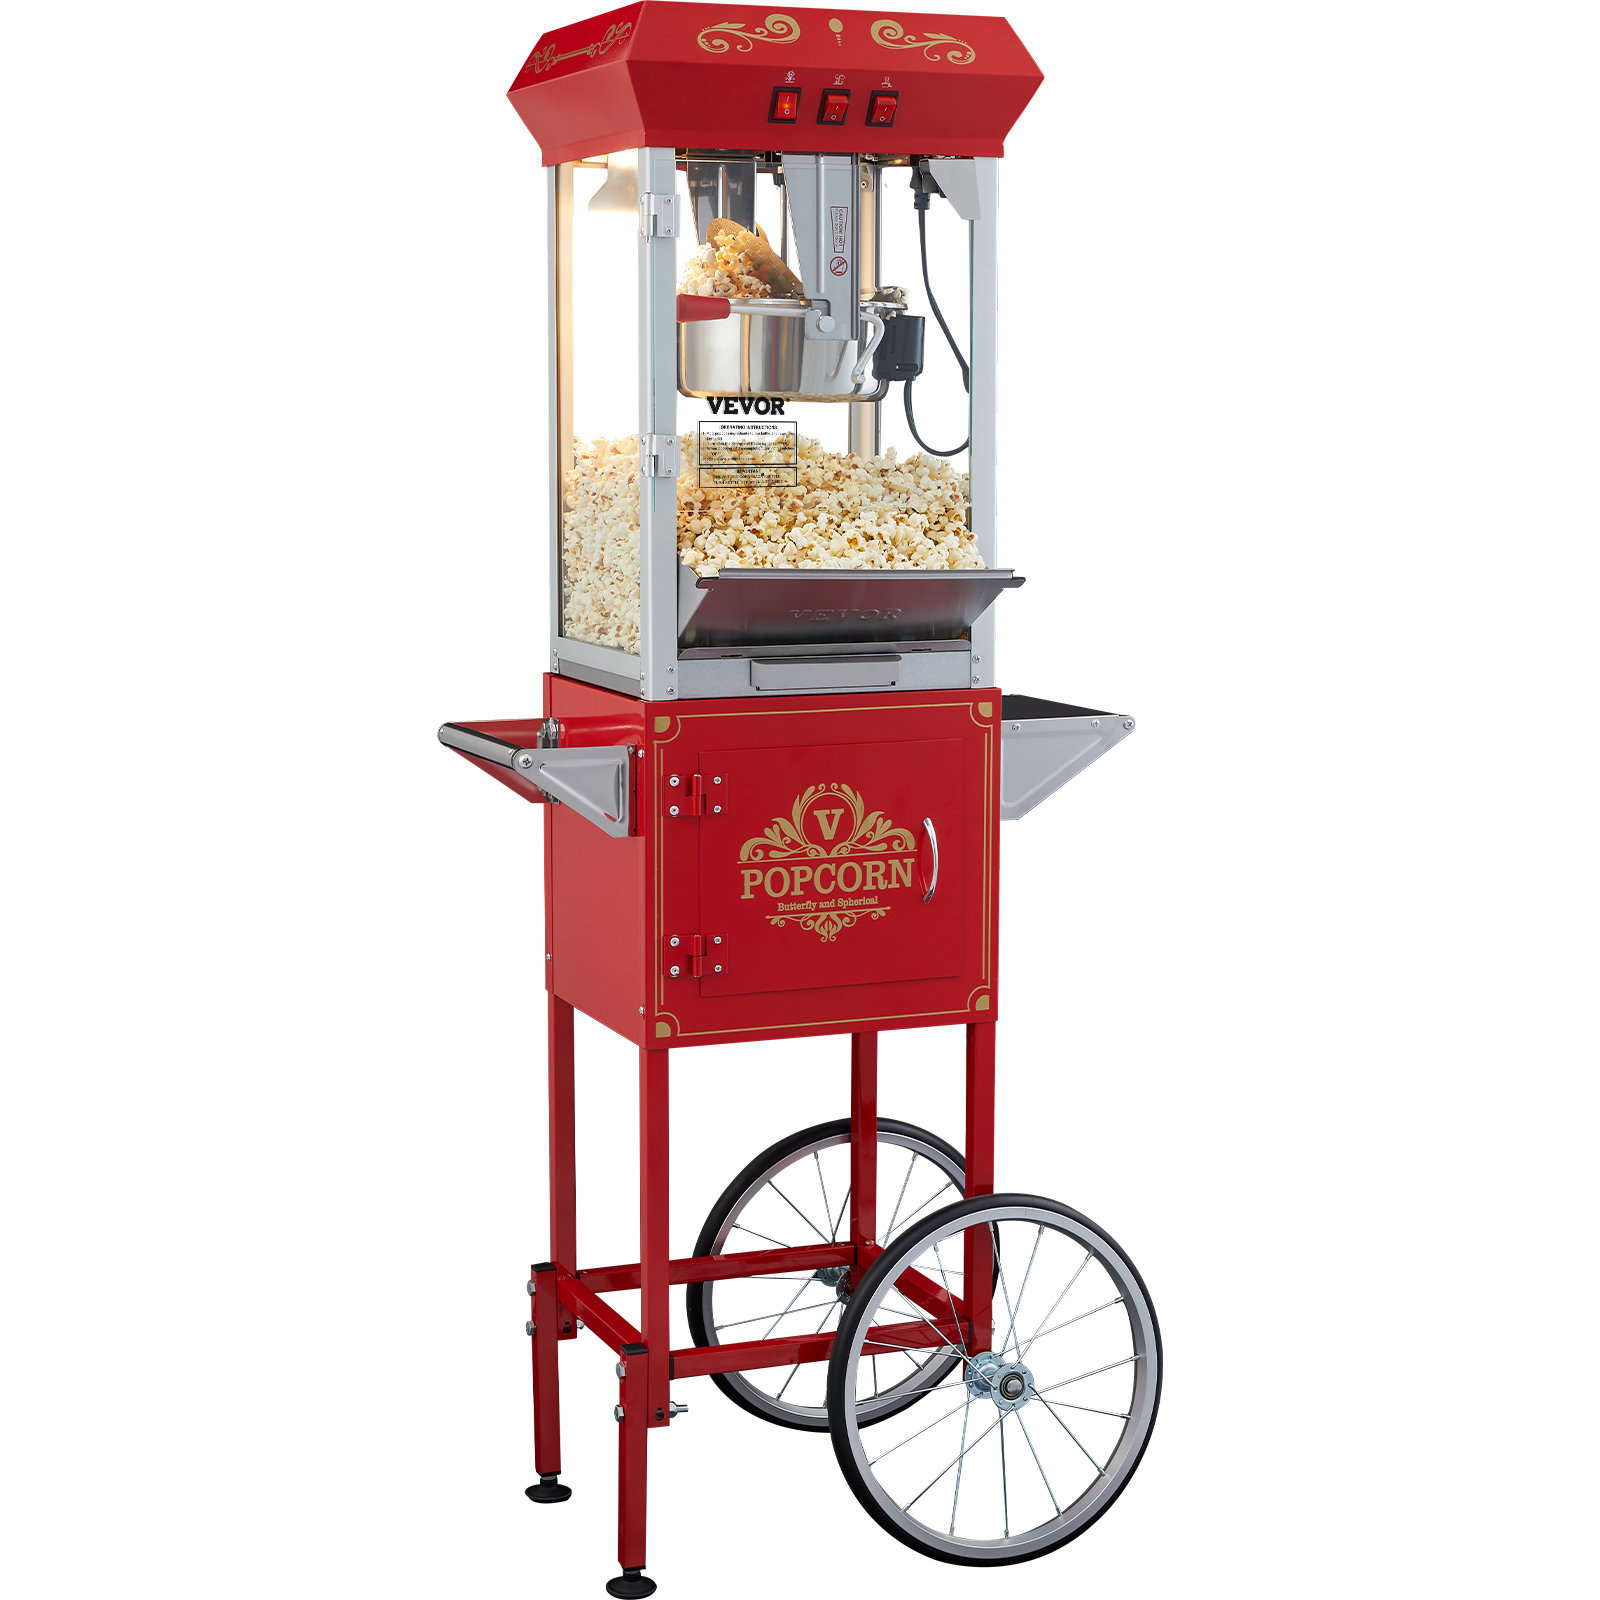 https://assets.wfcdn.com/im/31518044/compr-r85/2620/262055839/vevor-8-oz-popcorn-machine-with-cart-in-red-color.jpg